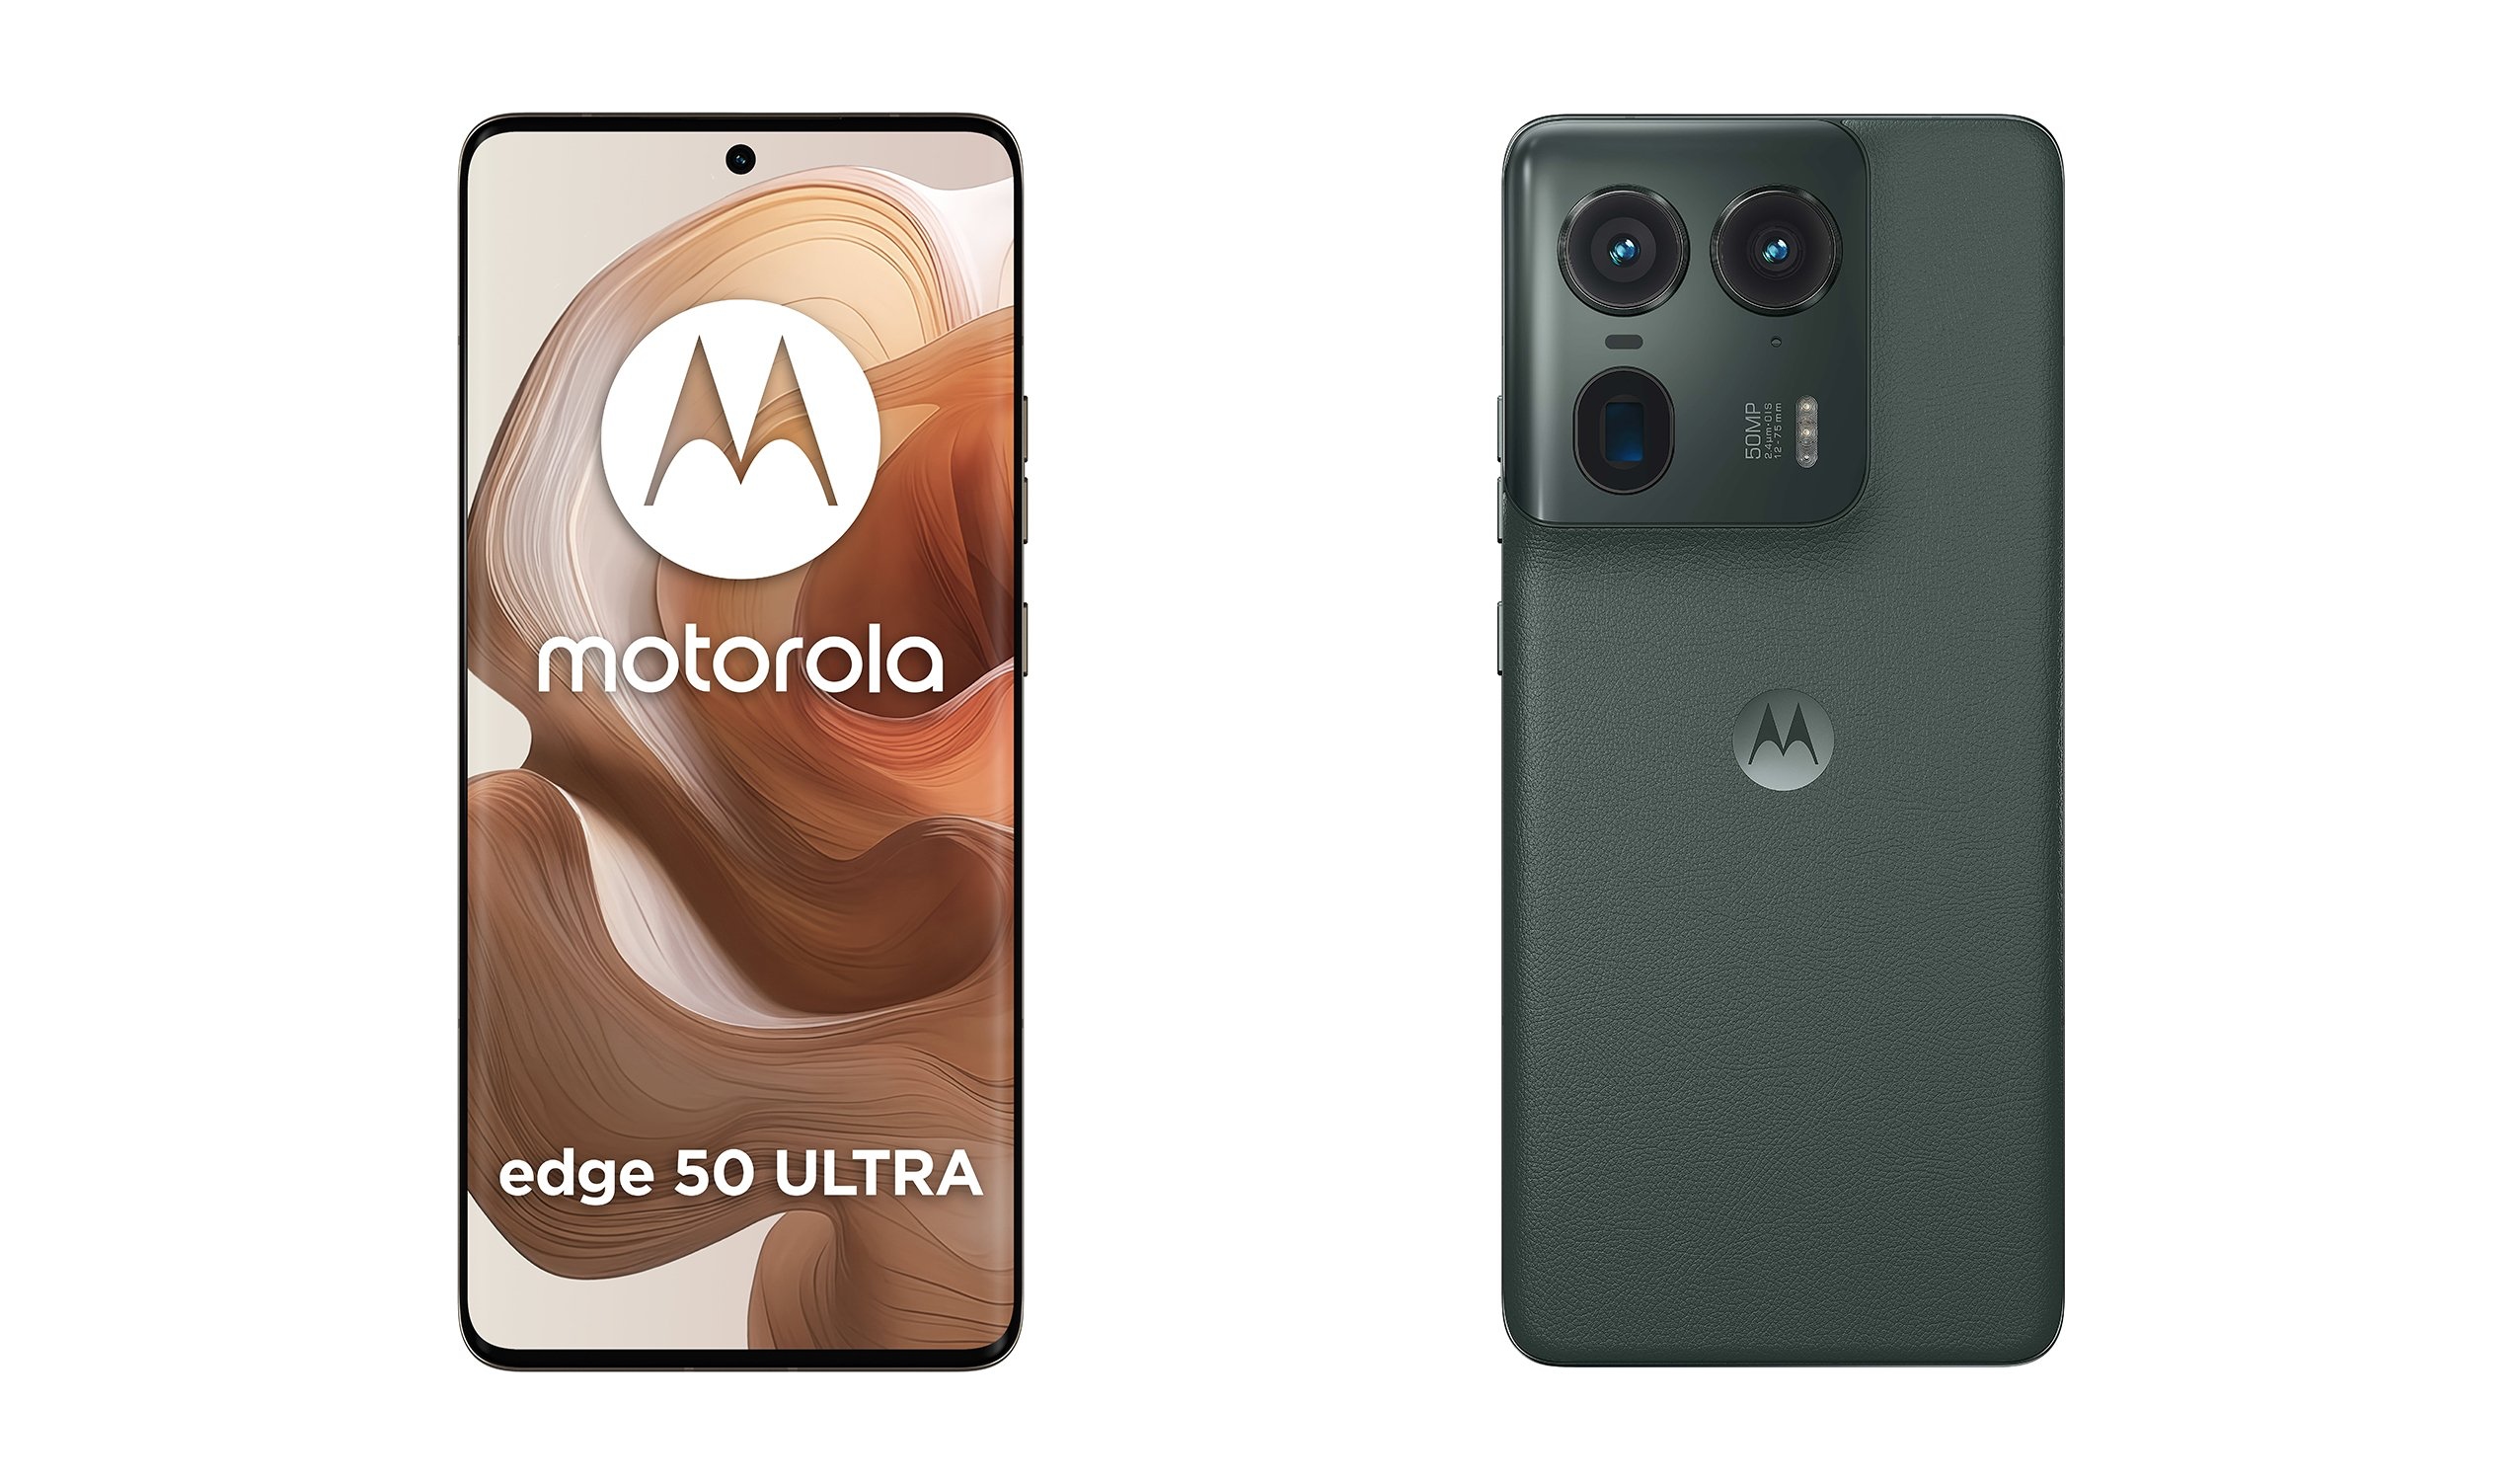 Buet skærm og periskopkamera: Insider afslører reklamevideoer af Motorola Edge 50 Ultra-flagskibet